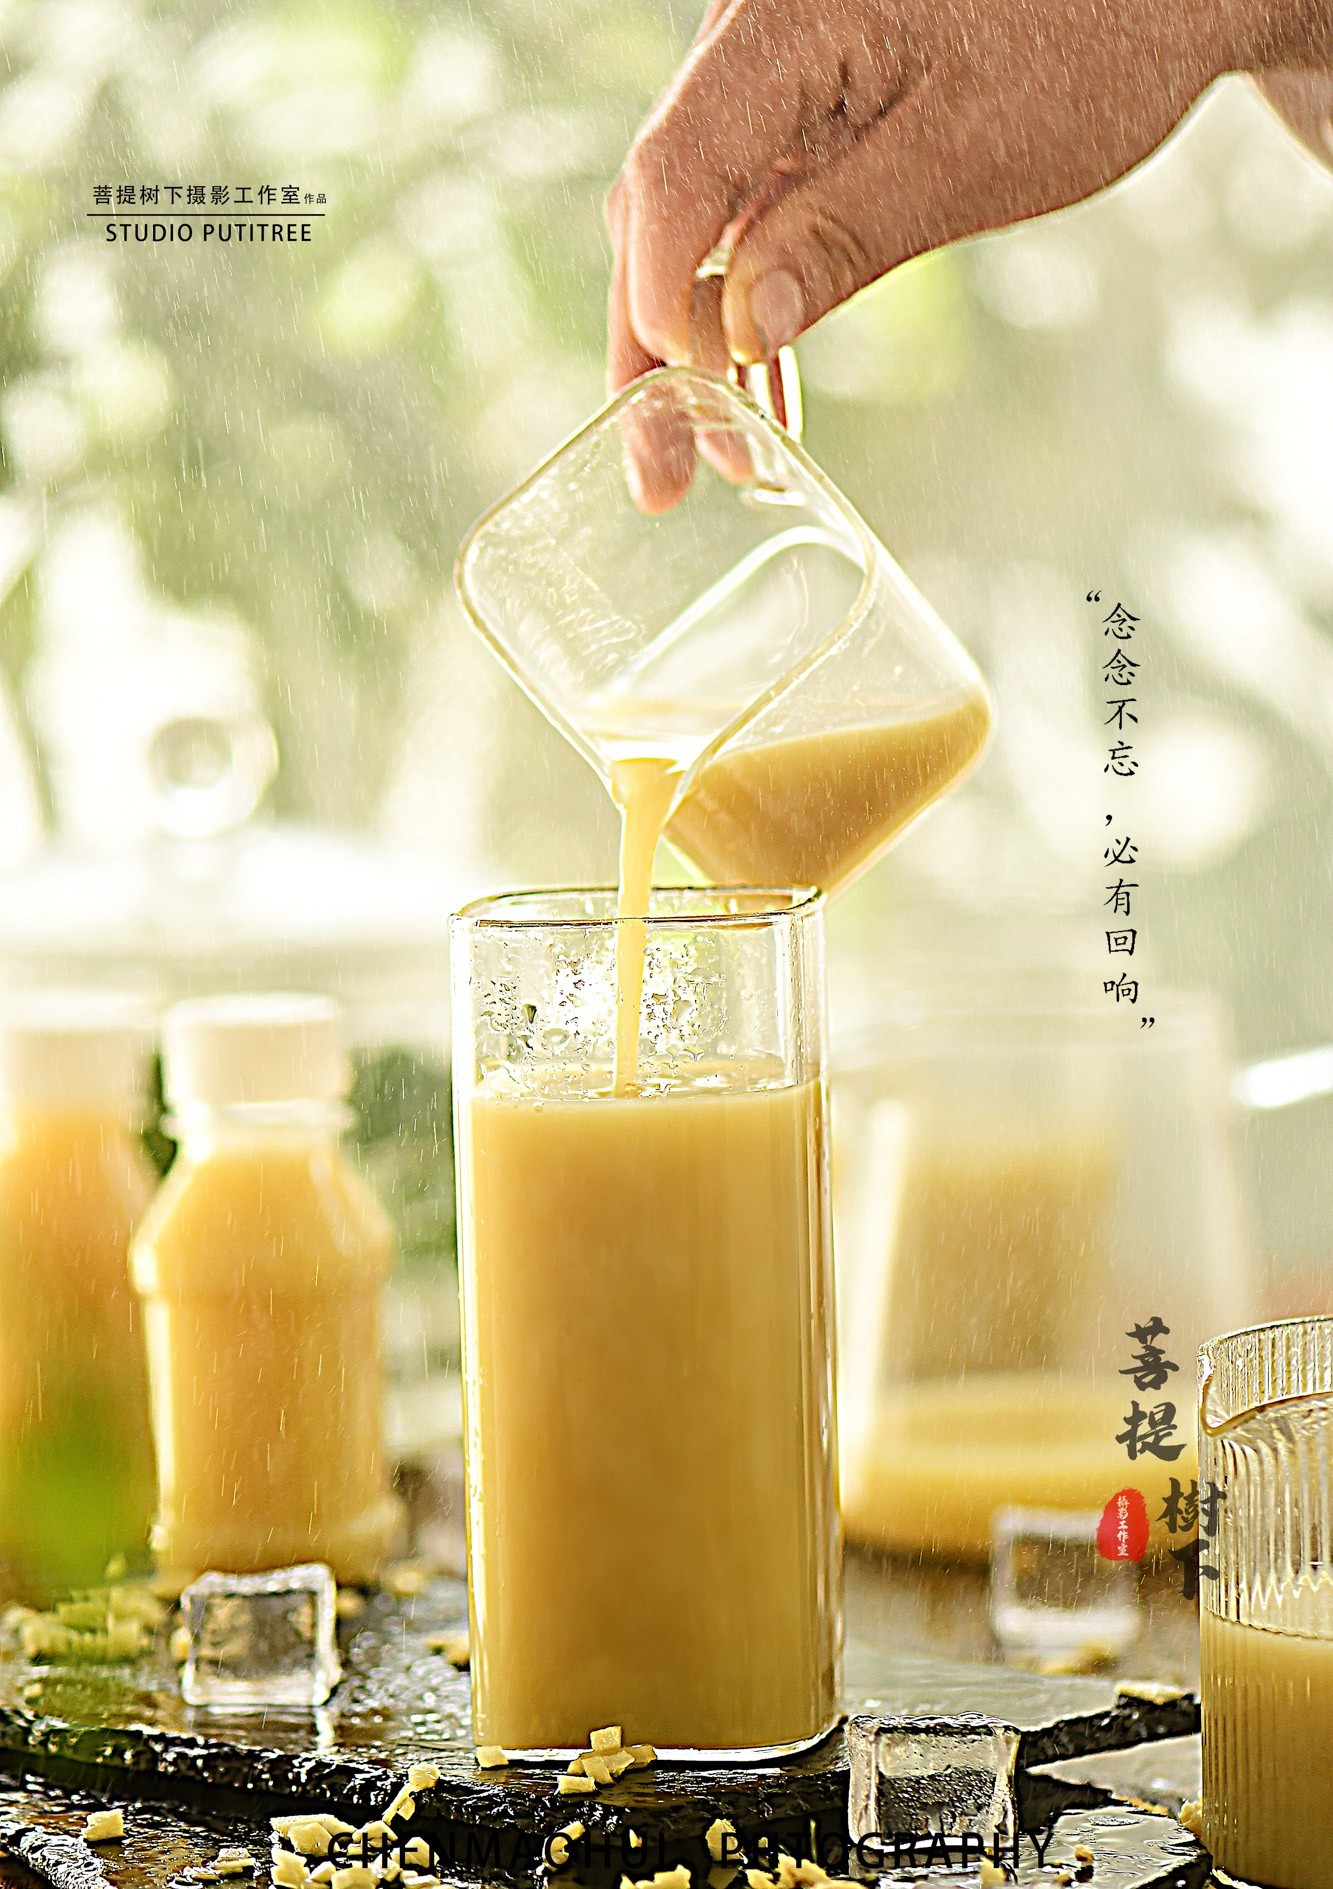 姜汁汽水 - 优美食